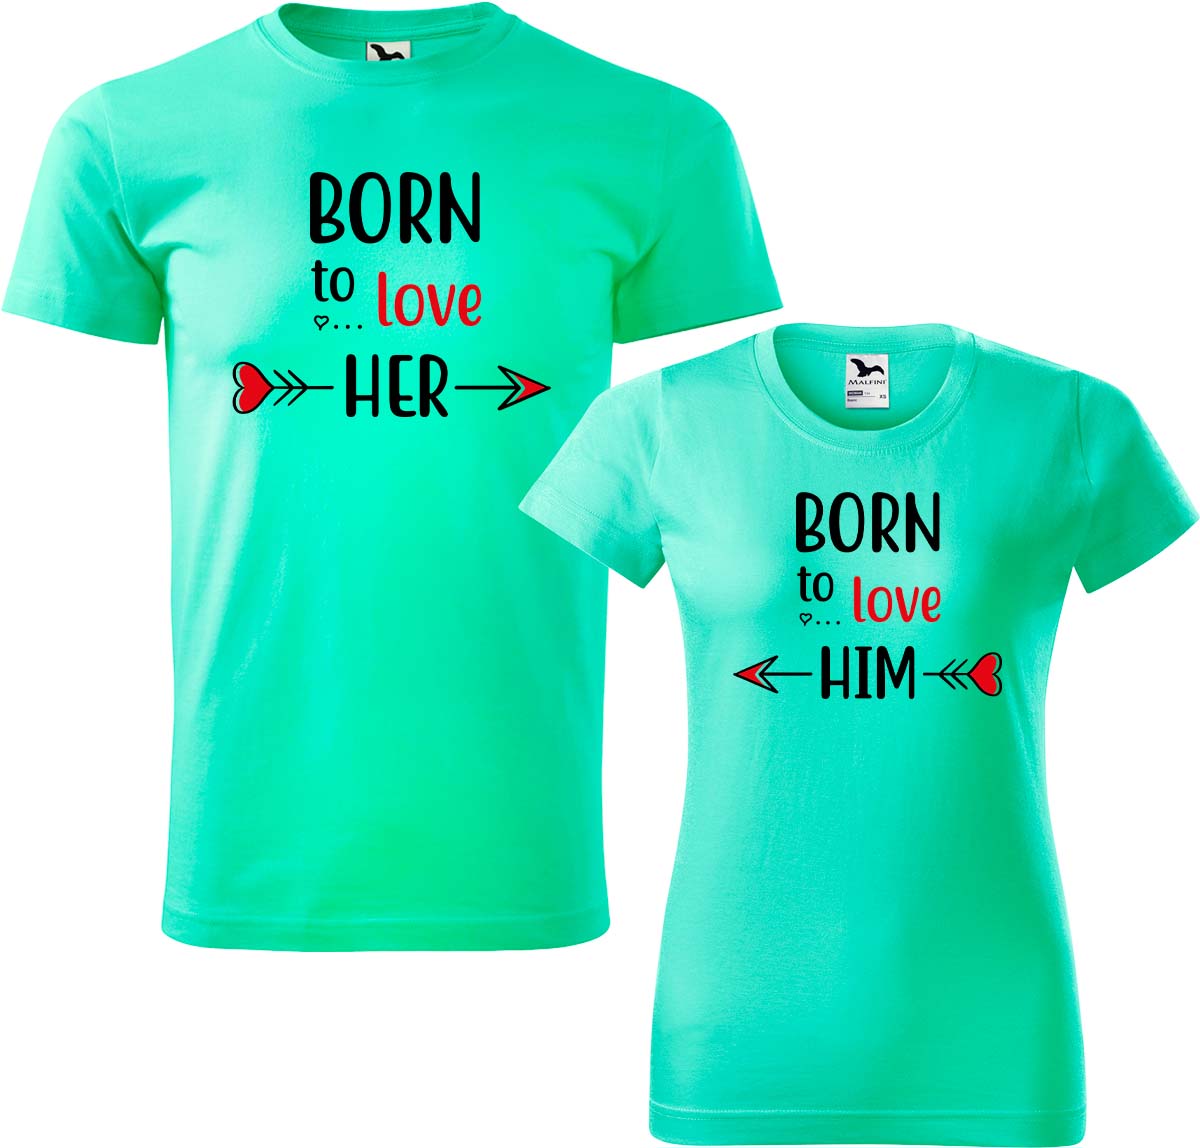 Trička pro páry - Born to Love Barva: Mátová (95), Velikost dámské tričko: L, Velikost pánské tričko: L